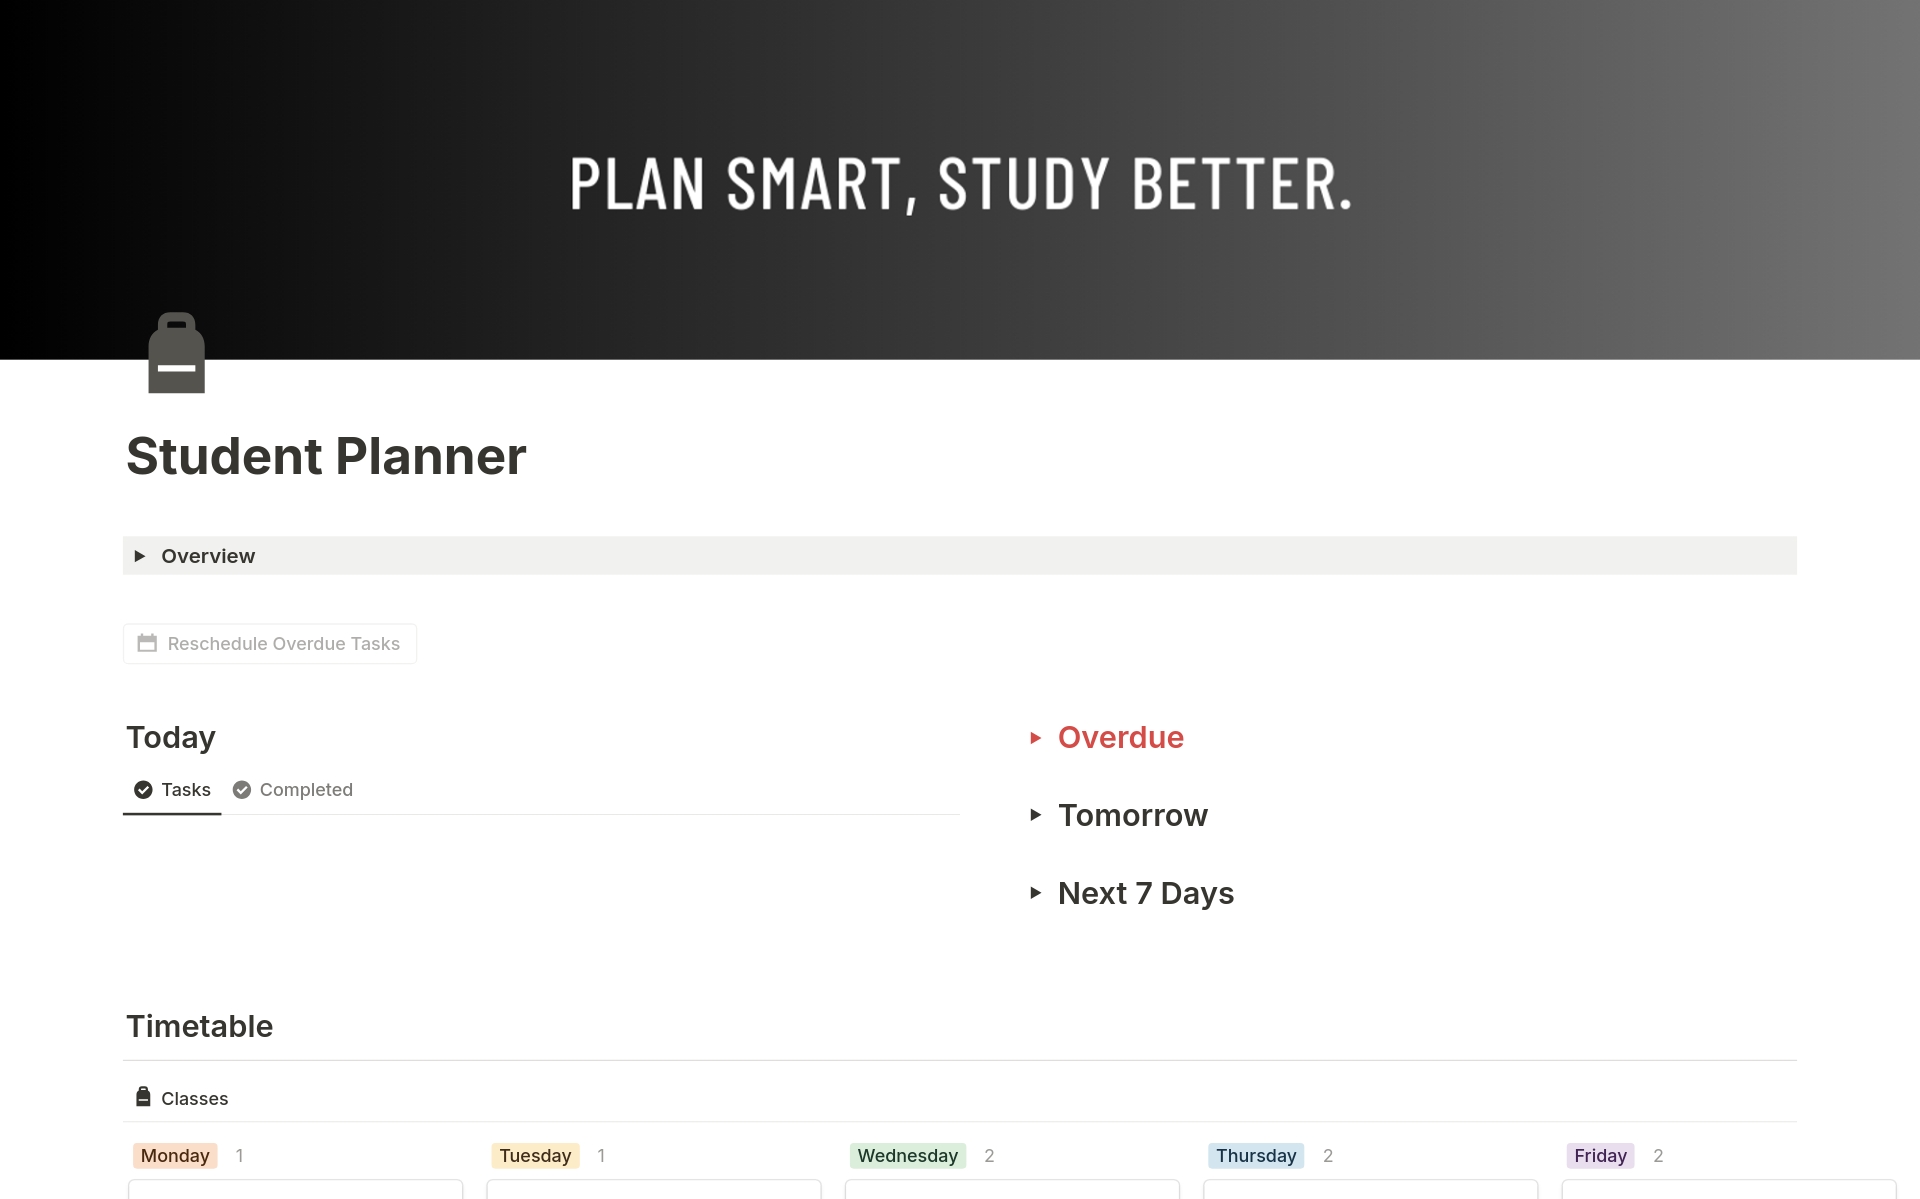 Uma prévia do modelo para Student Planner